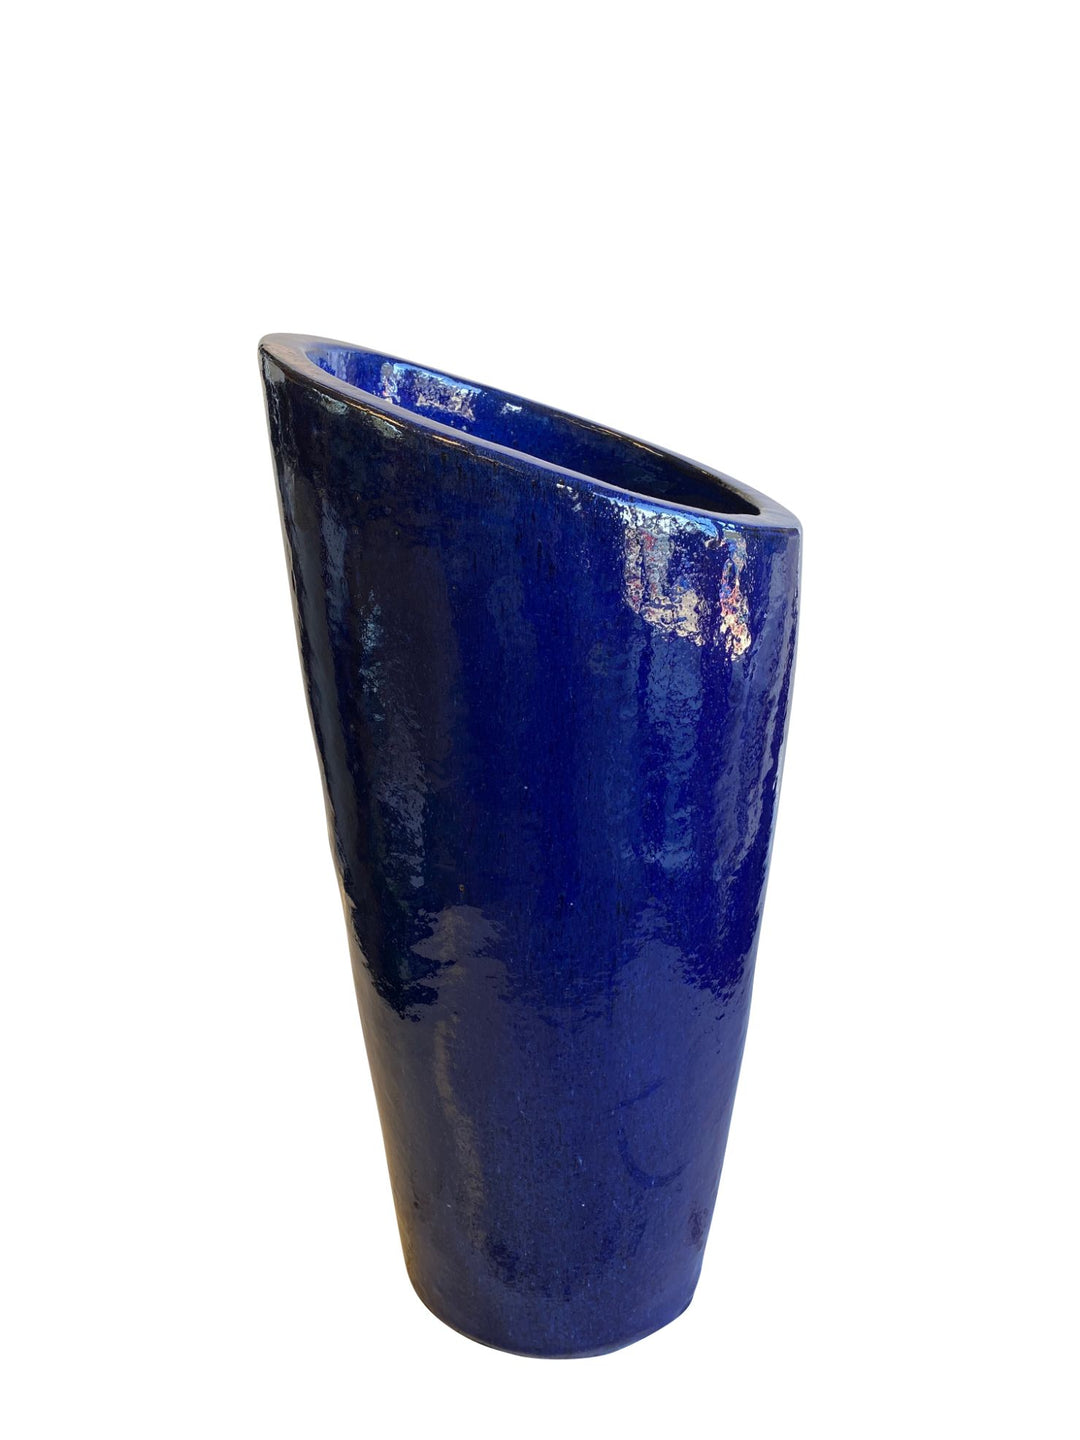 Blue Slanted Ceramic Planter